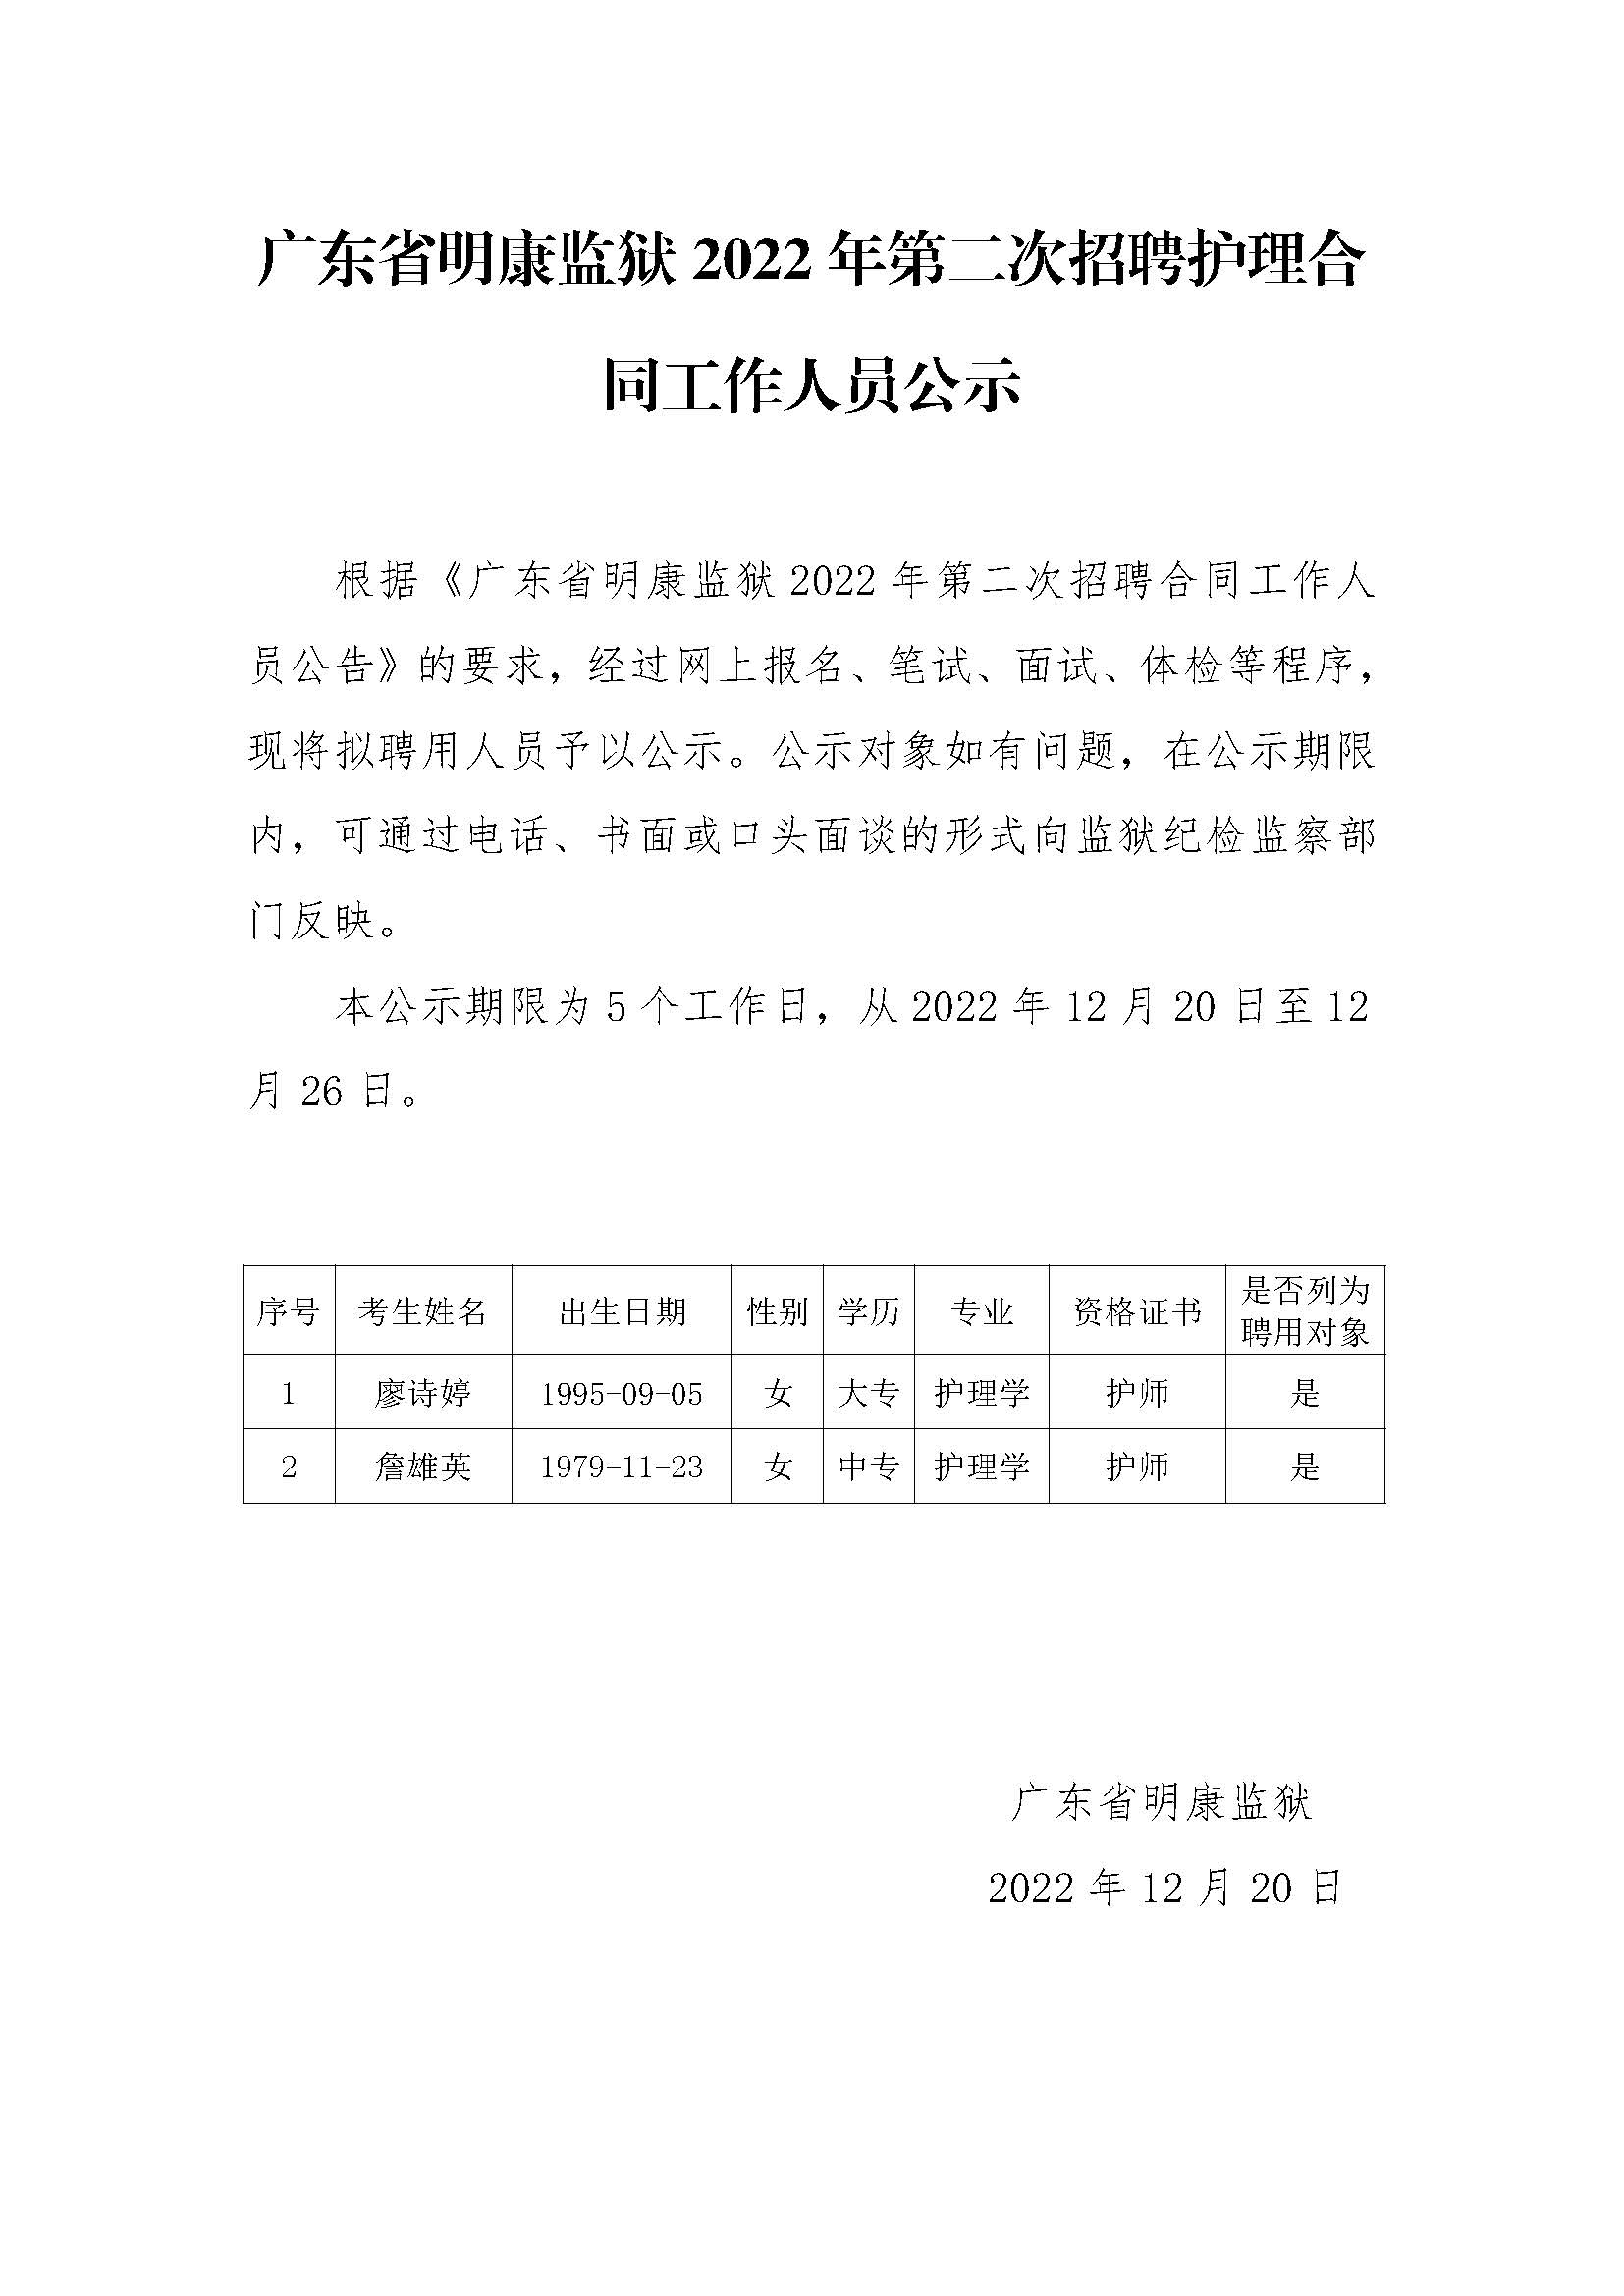 广东省明康监狱2022年第二次招聘护理合同工作人员公示.jpg